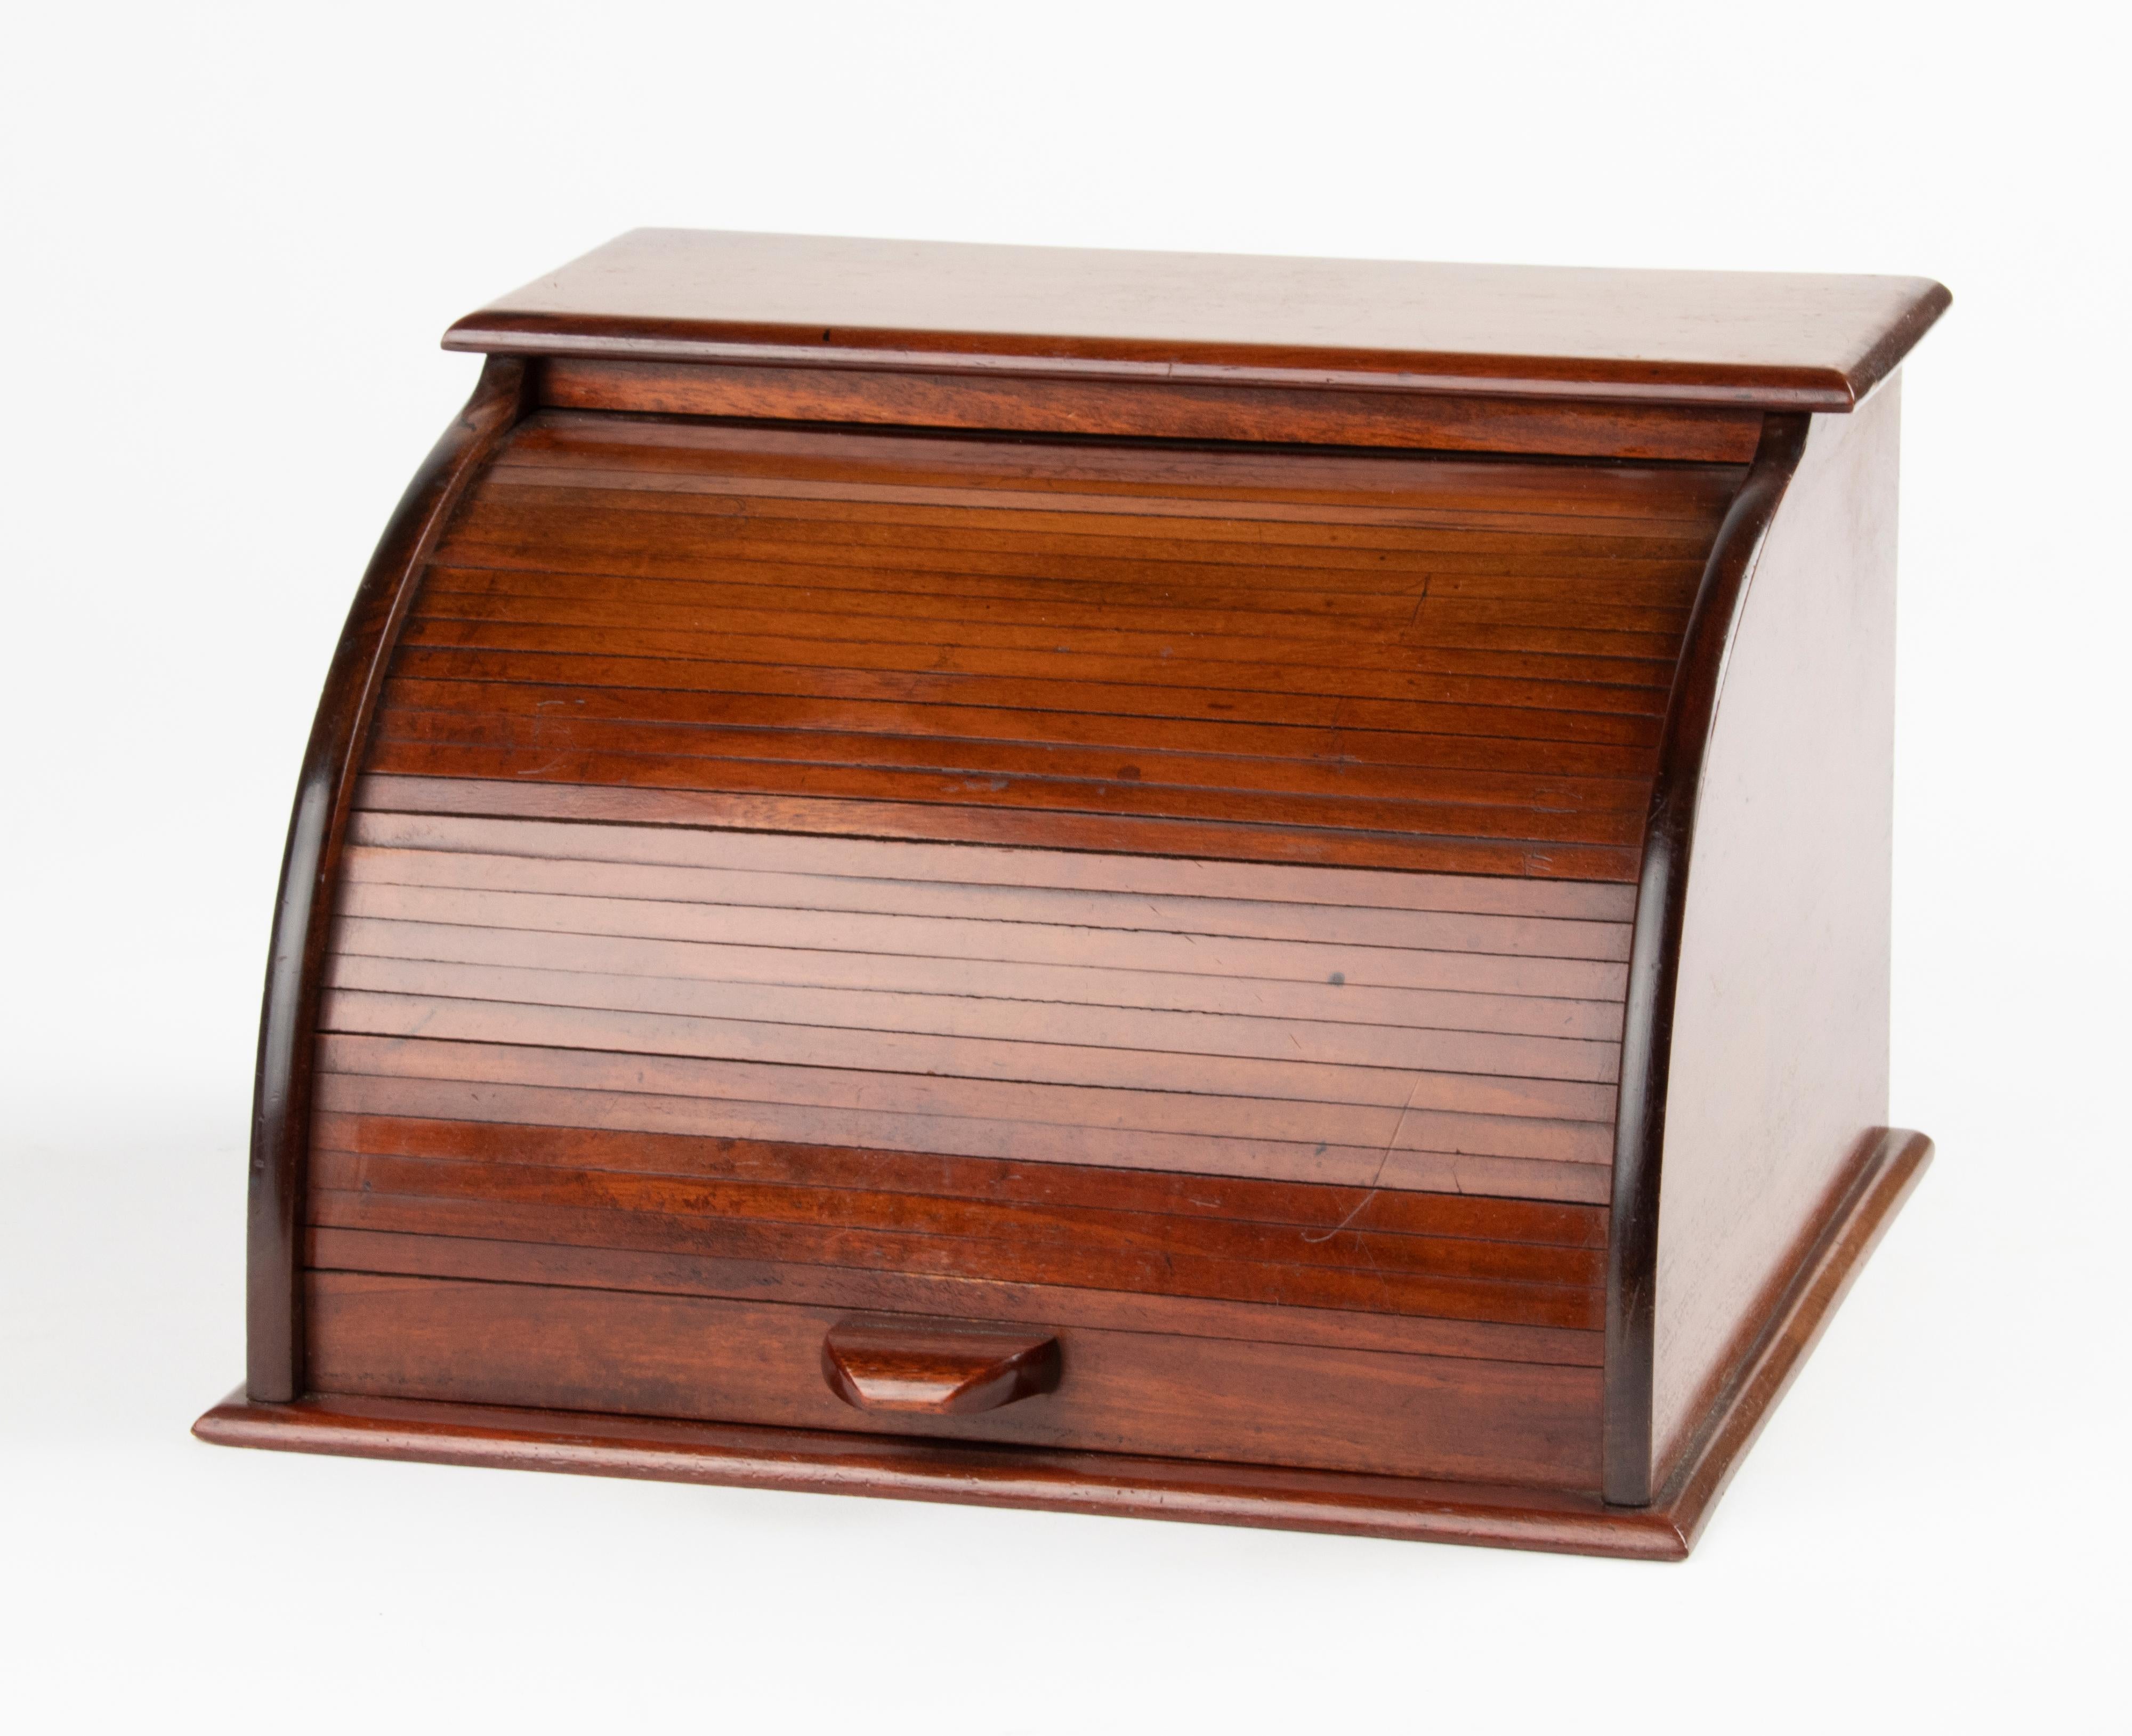 Belle boîte ancienne pour lettres / documents avec une porte à volet roulant. La boîte est en bois. En bon état, la porte à tambour s'ouvre en douceur. Fabriqué en France, vers 1880-1890.